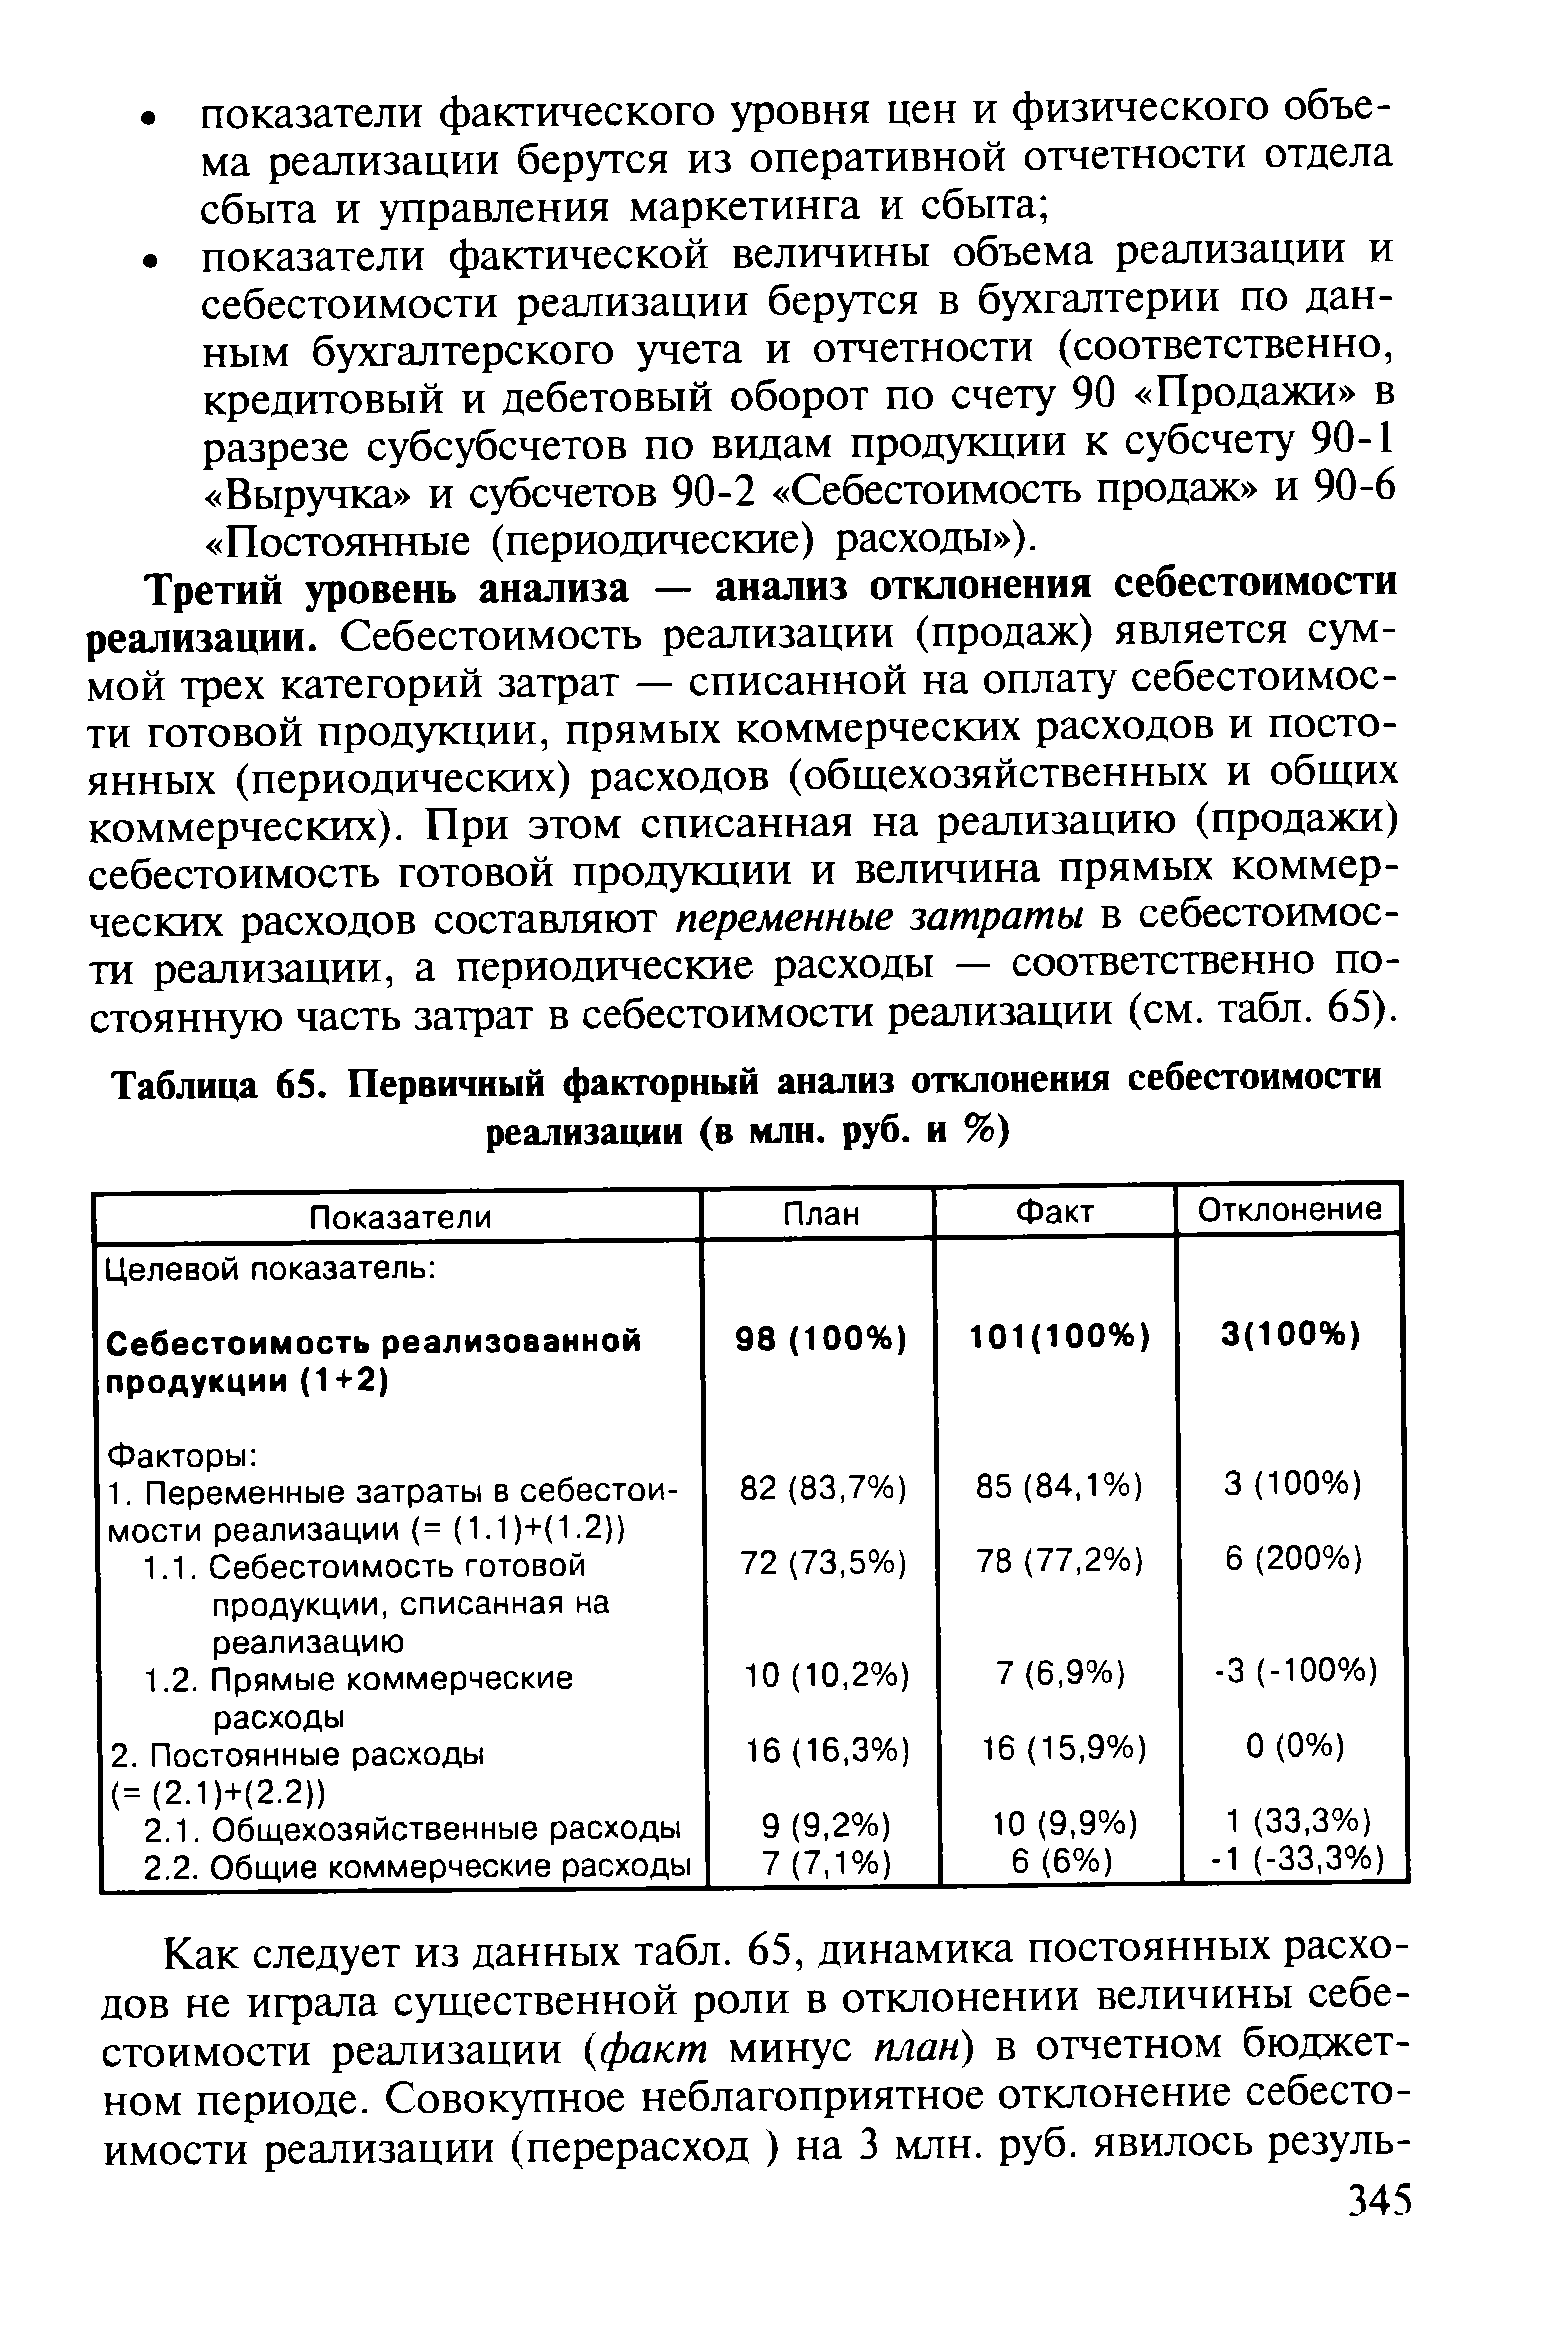 Таблица 65. Первичный факторный анализ отклонения себестоимости реализации (в млн. руб. и %)
